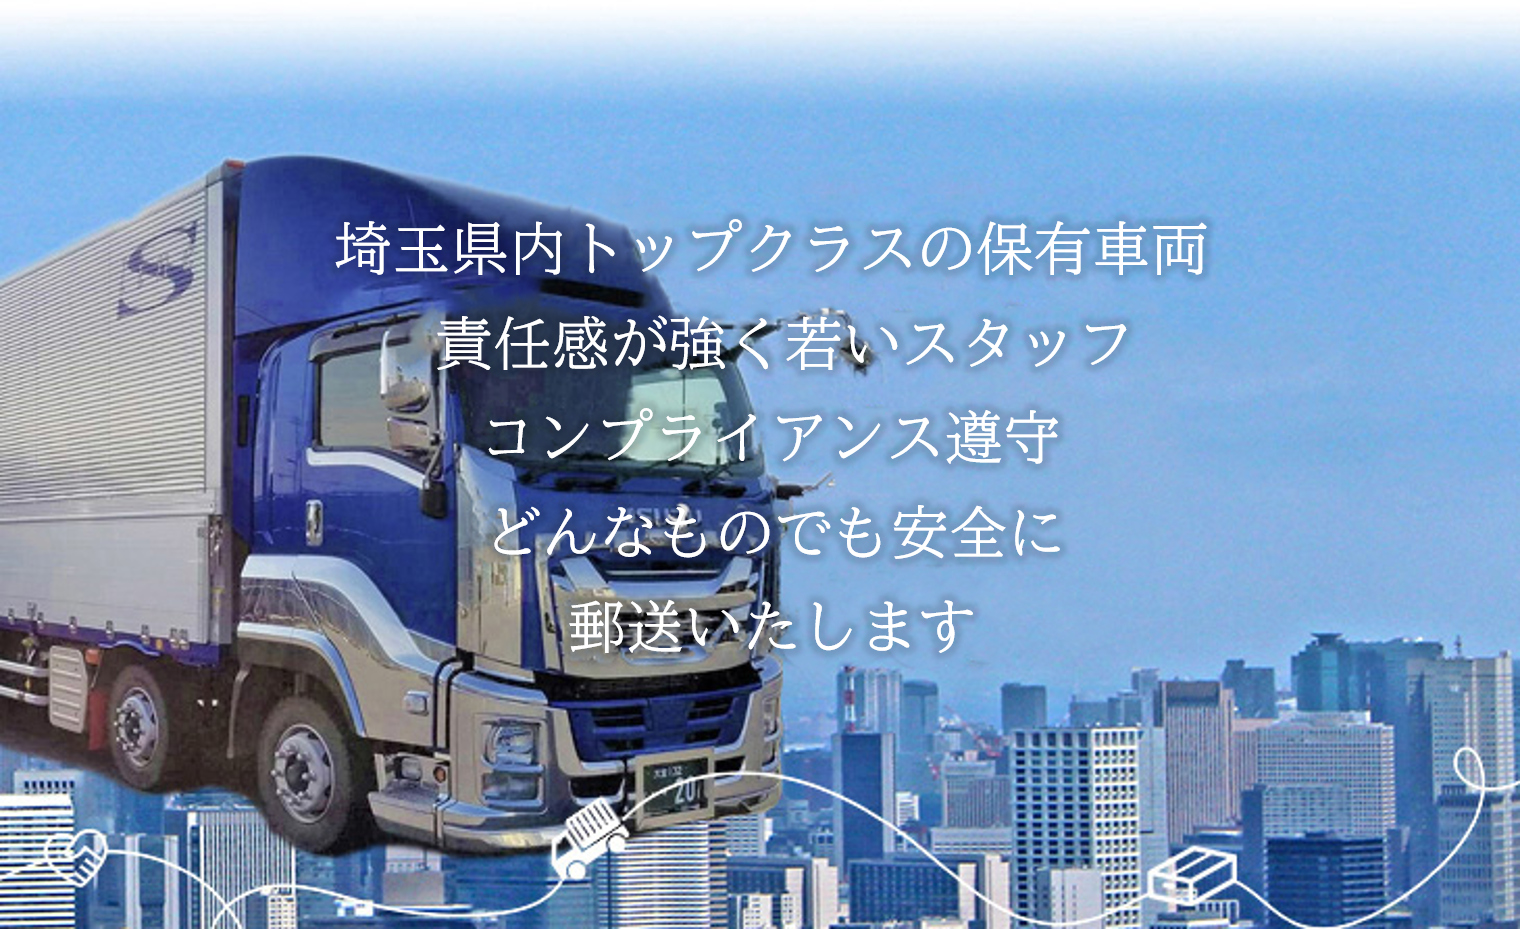 埼玉県で運送業を営む【株式会社清光ライン】 | 74台の保有車両 責任感が強く若いスタッフ コンプライアンス遵守  どんなものでも安全に輸送いたします